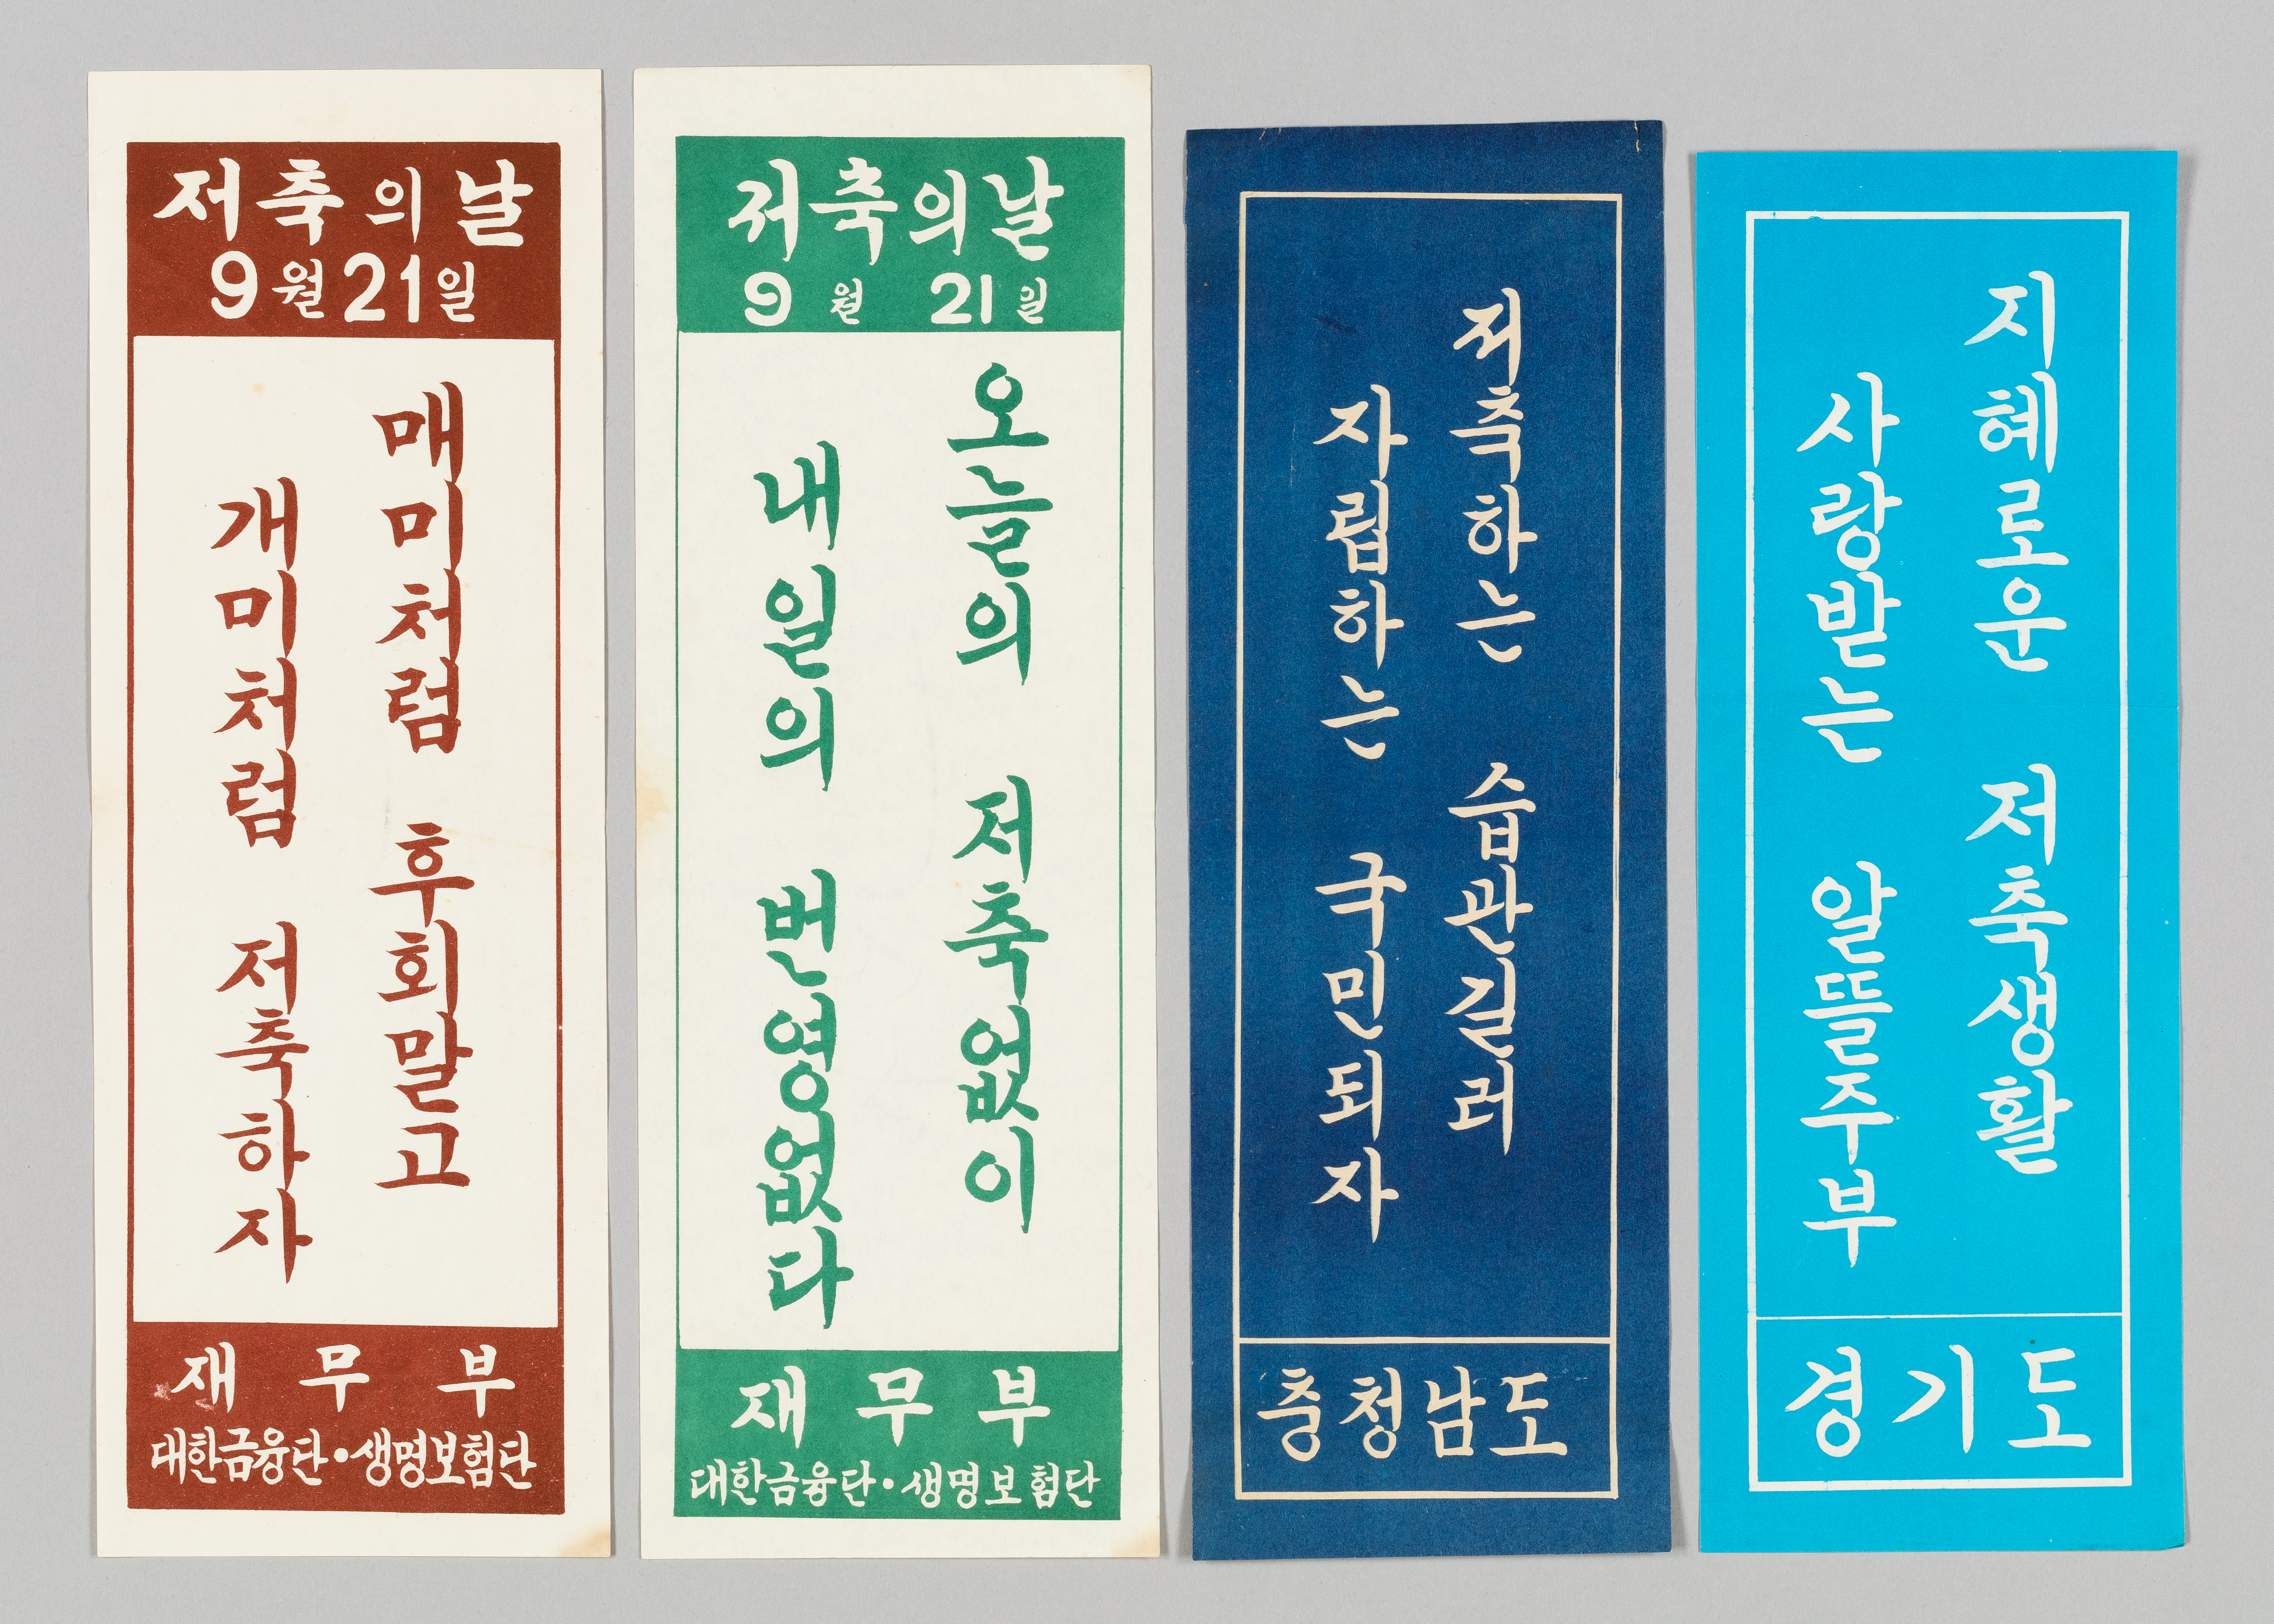 대한민국역사박물관에서 진행하는 ‘목돈의 꿈’은 한국 현대사에서 드러난 다양한 재테크의 모습을 보여 준다. 사진은 저축을 독려하는 표어들에는 비장함이 묻어난다. 대한민국역사박물관 제공